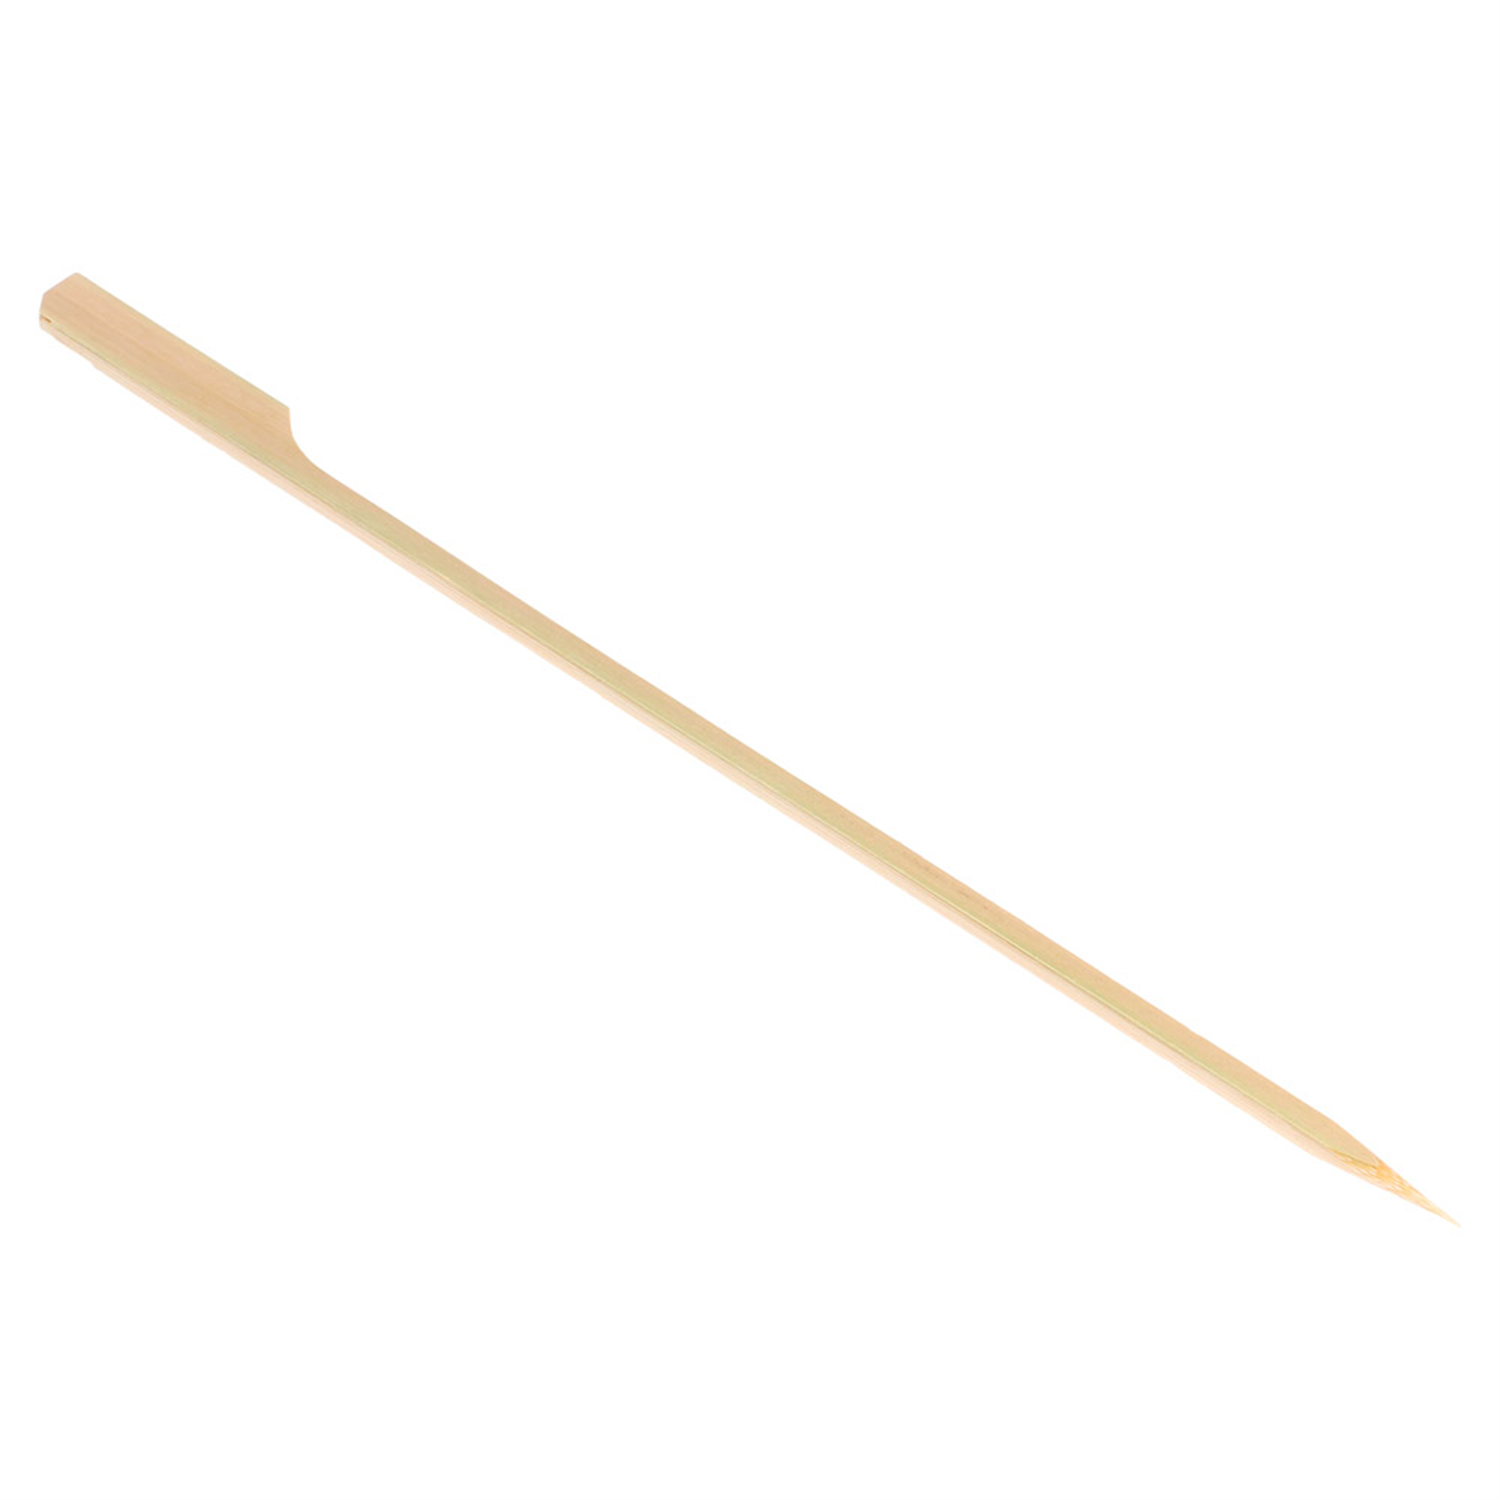 Pique brochette apéritif bambou 9cm x100 - Chevalier - MaSpatule